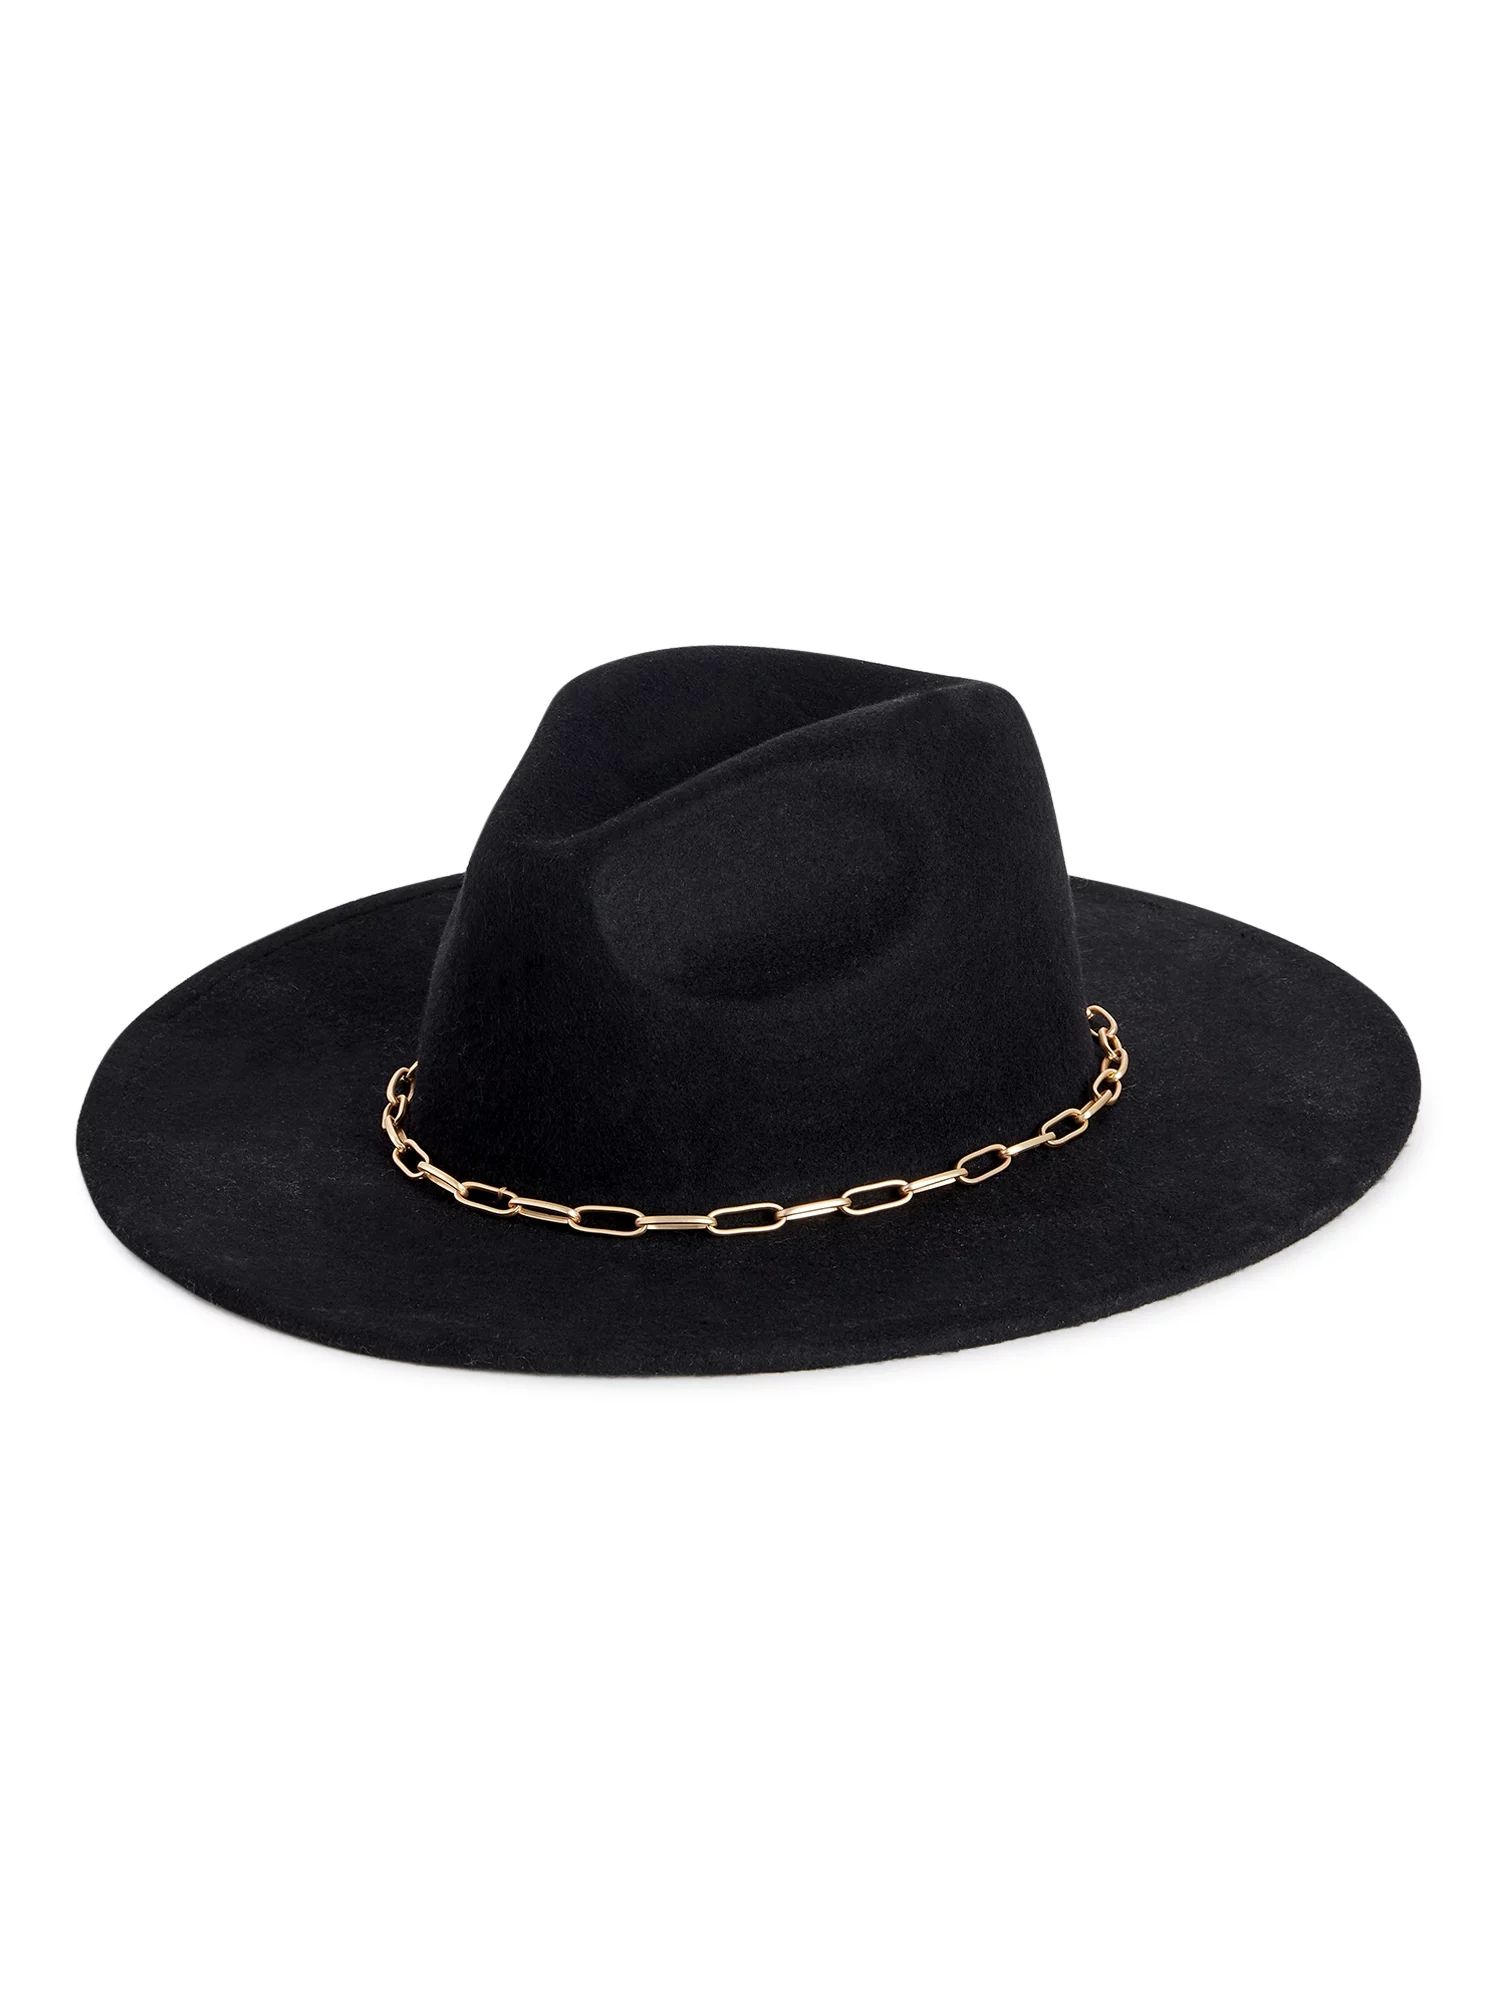 Scoop Women's Rancher Hat with Chain Trim - Walmart.com | Walmart (US)